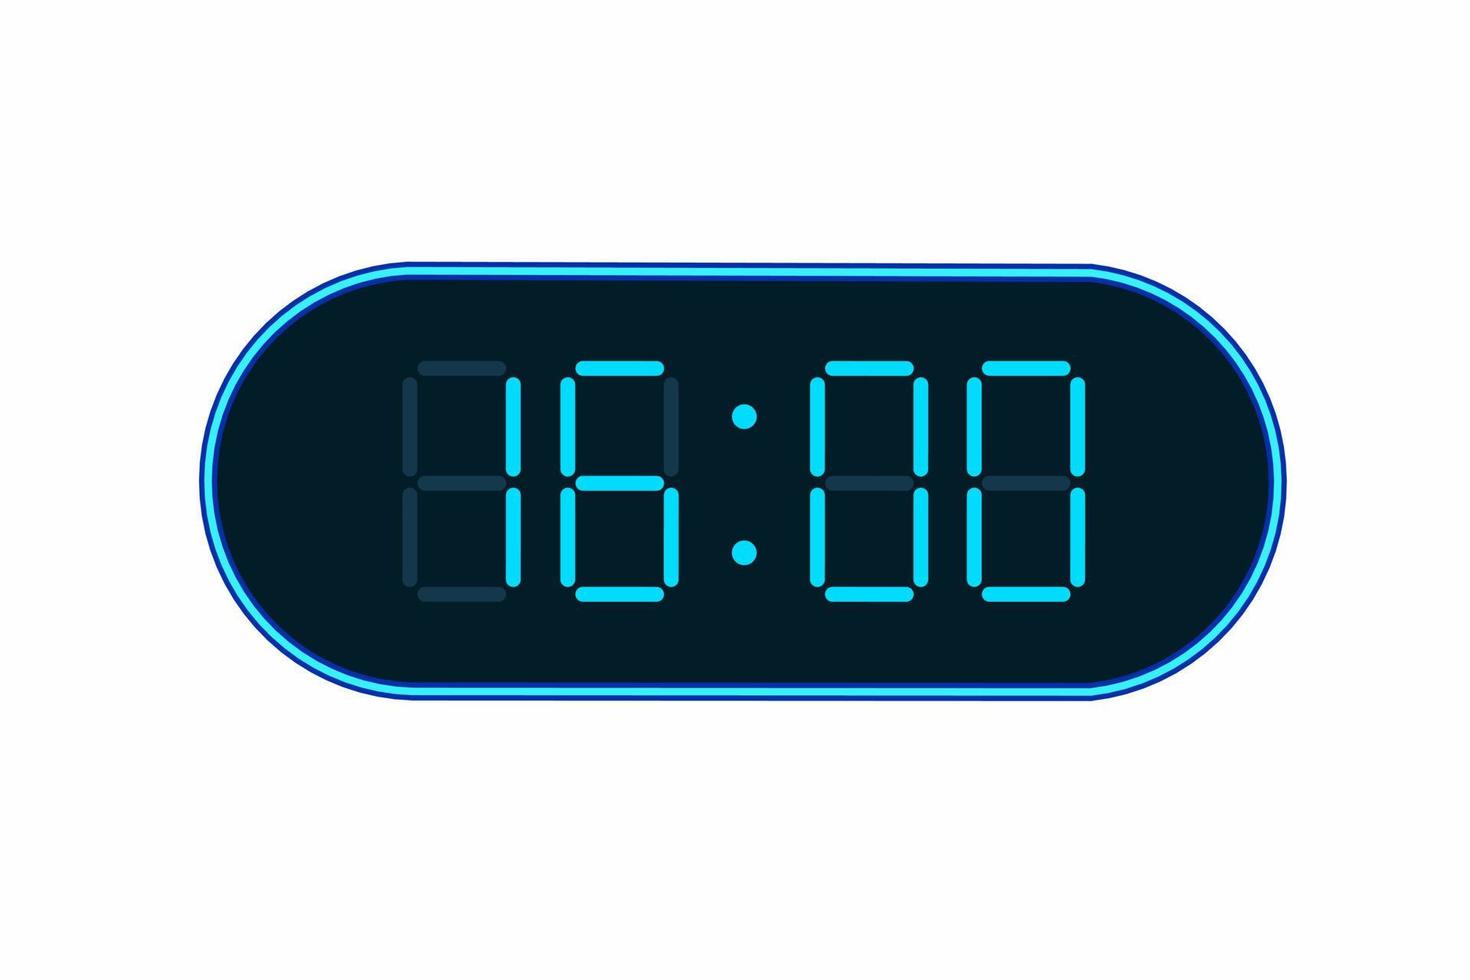 ilustração em vetor plana de um relógio digital exibindo 16h00. ilustração de alarme com design de número digital. ícone de relógio por hora, relógio, sinais de alarme